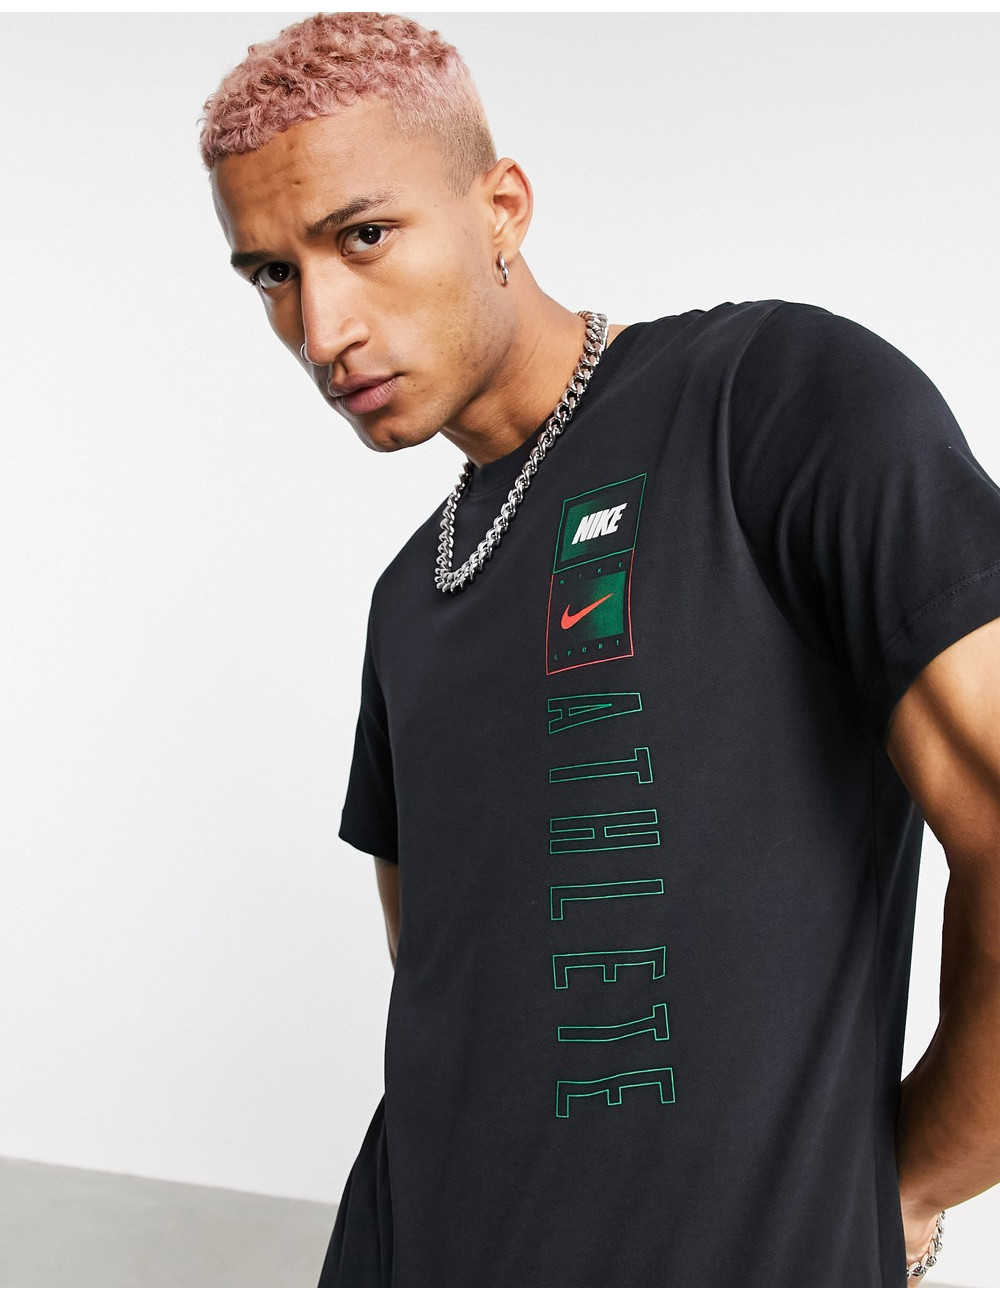 Nike Dri-FIT t-shirt in black